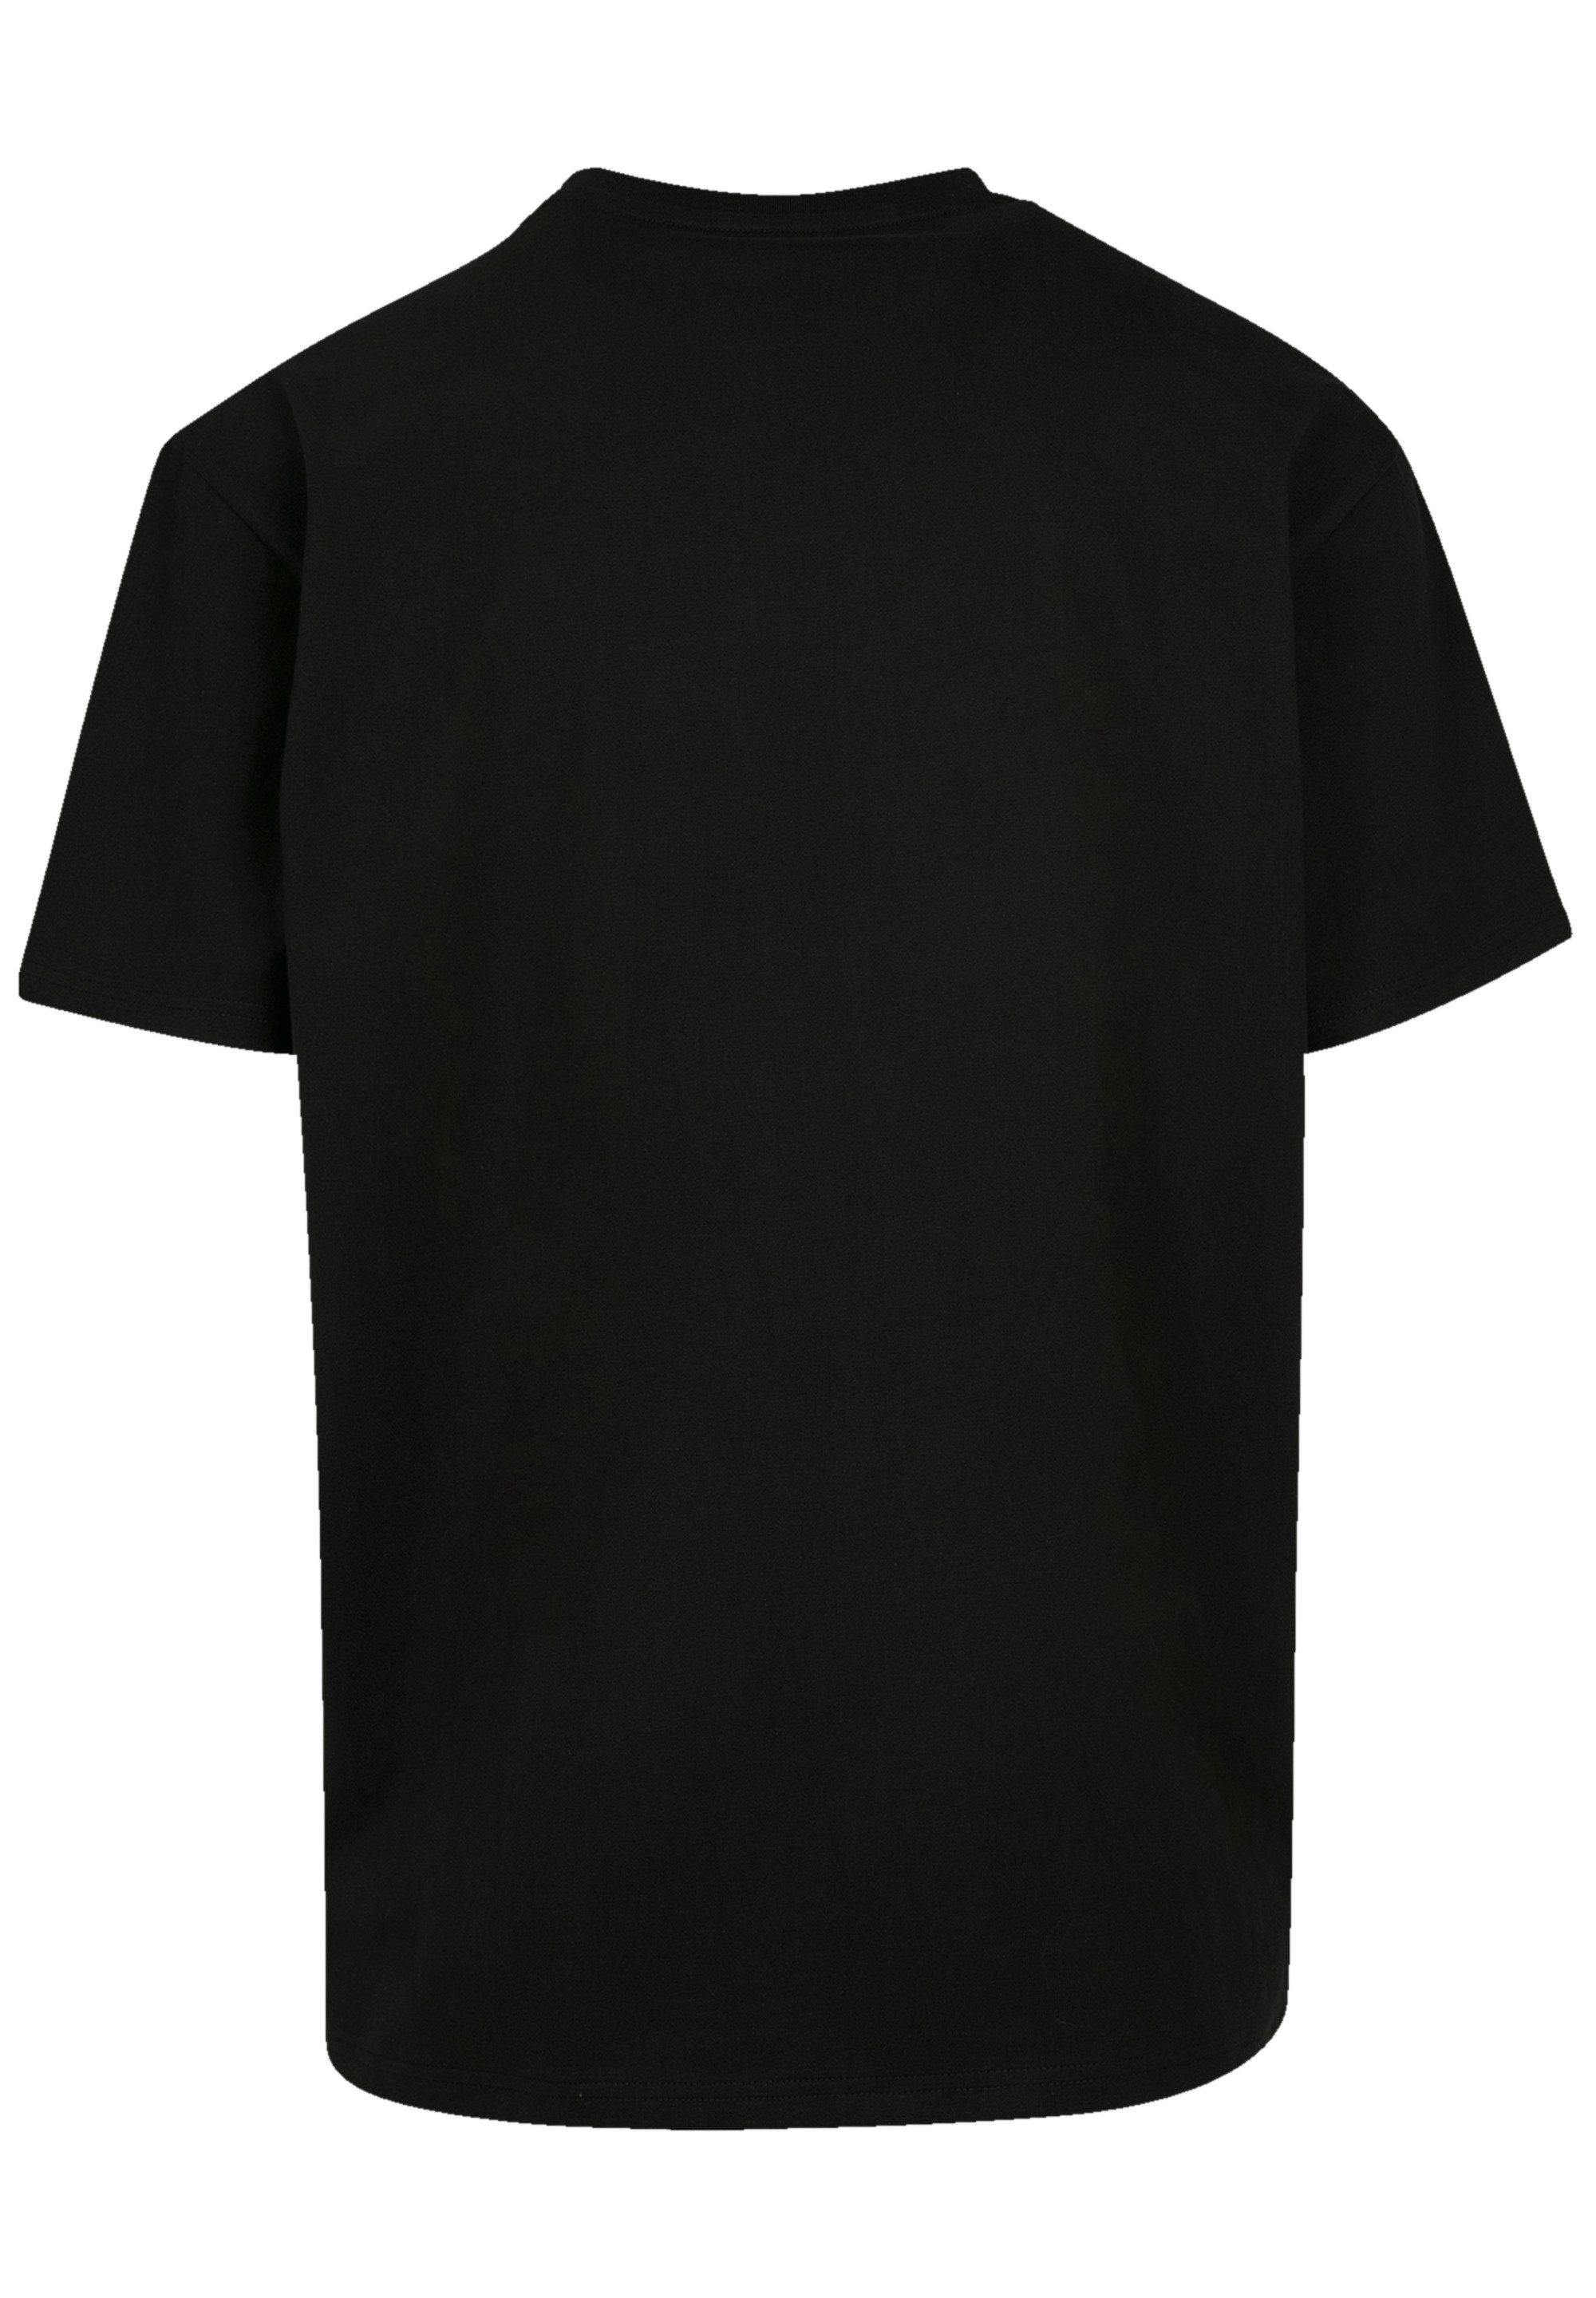 F4NT4STIC T-Shirt Rush Qualität By Rock Night schwarz Band Circle Premium Fly